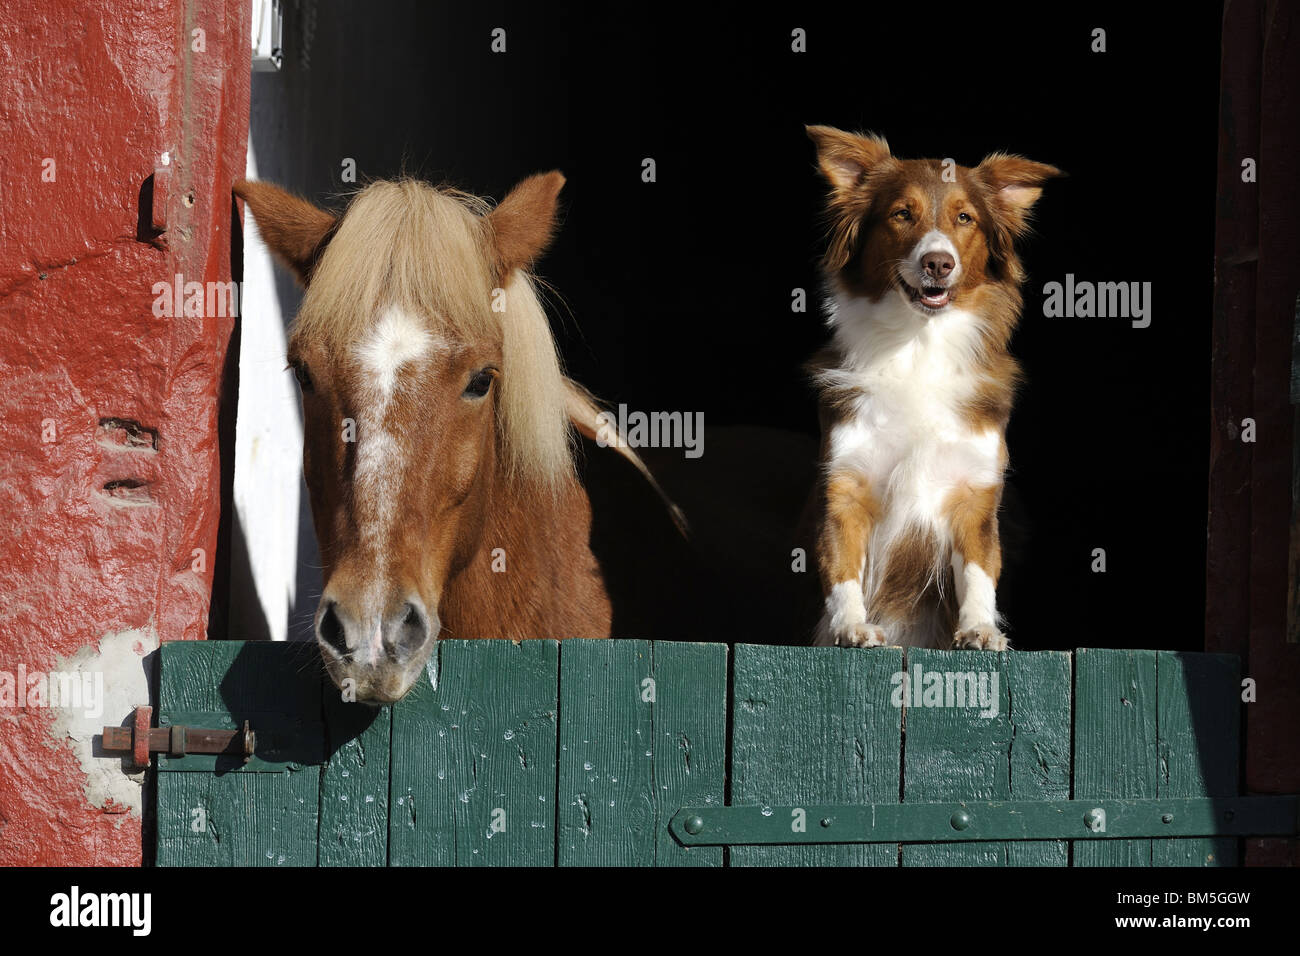 Cheval islandais (Equus ferus caballus) et Australian Shepherd (Canis lupus familiaris) à la recherche de porte de l'écurie. Banque D'Images